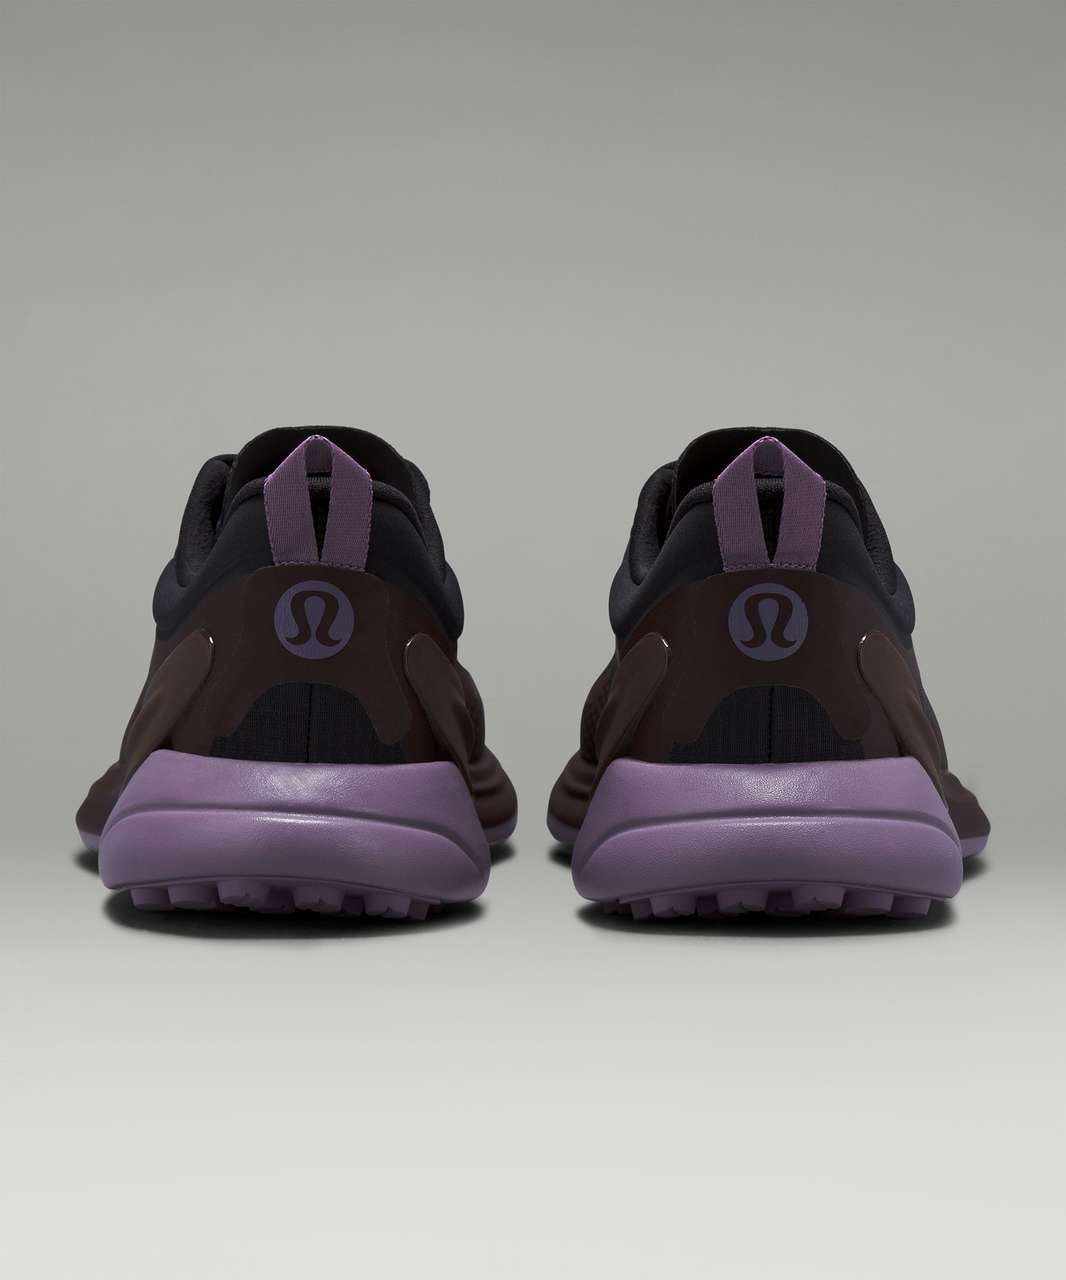 Lululemon Blissfeel Trail Womens Running Shoe - Black / Espresso / Purple Ash